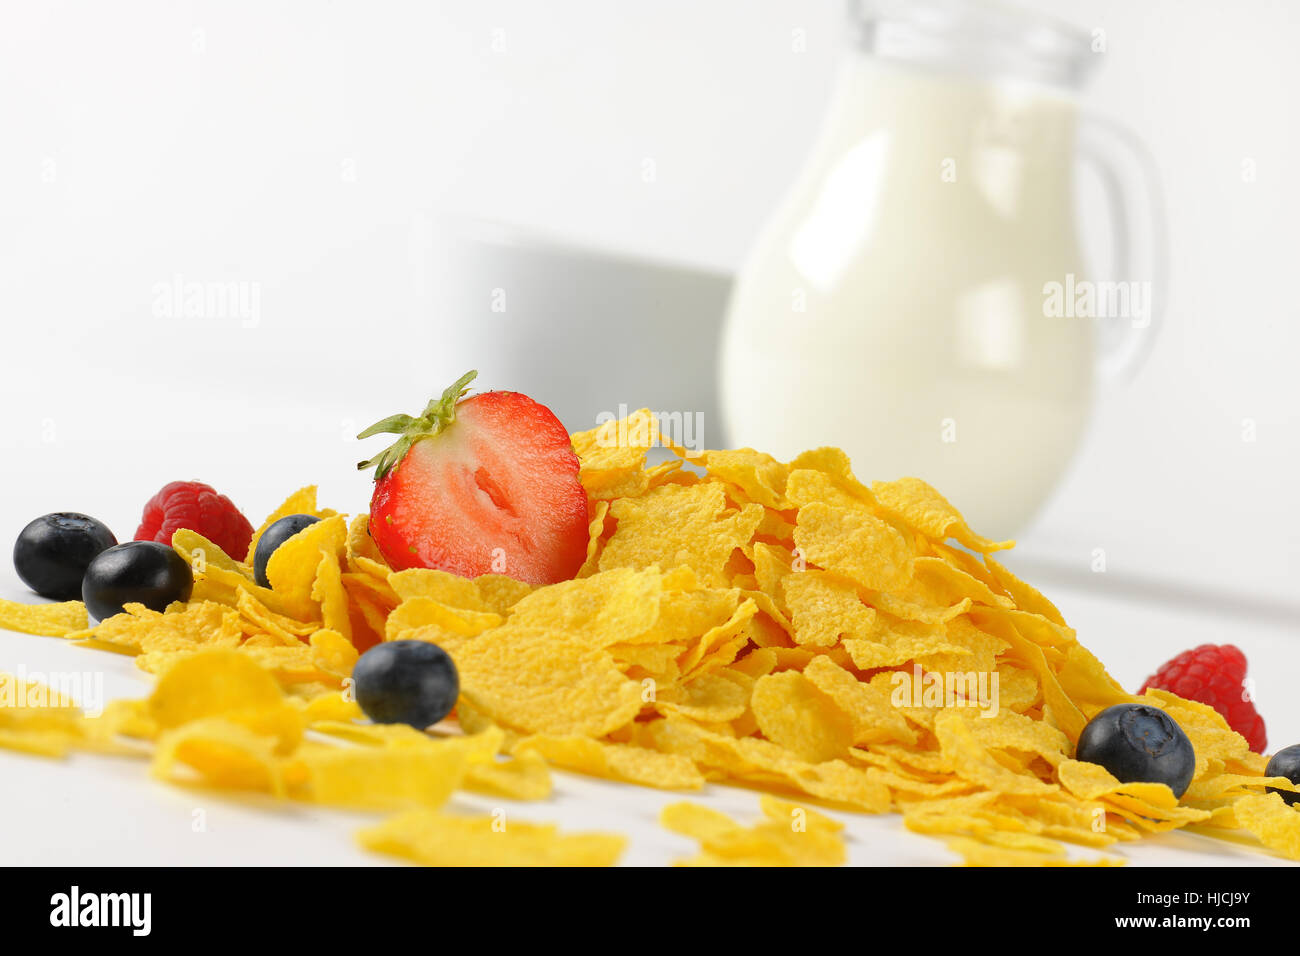 Krug Milch und Cornflakes mit Beeren auf weißem Hintergrund - Nahaufnahme Stockfoto